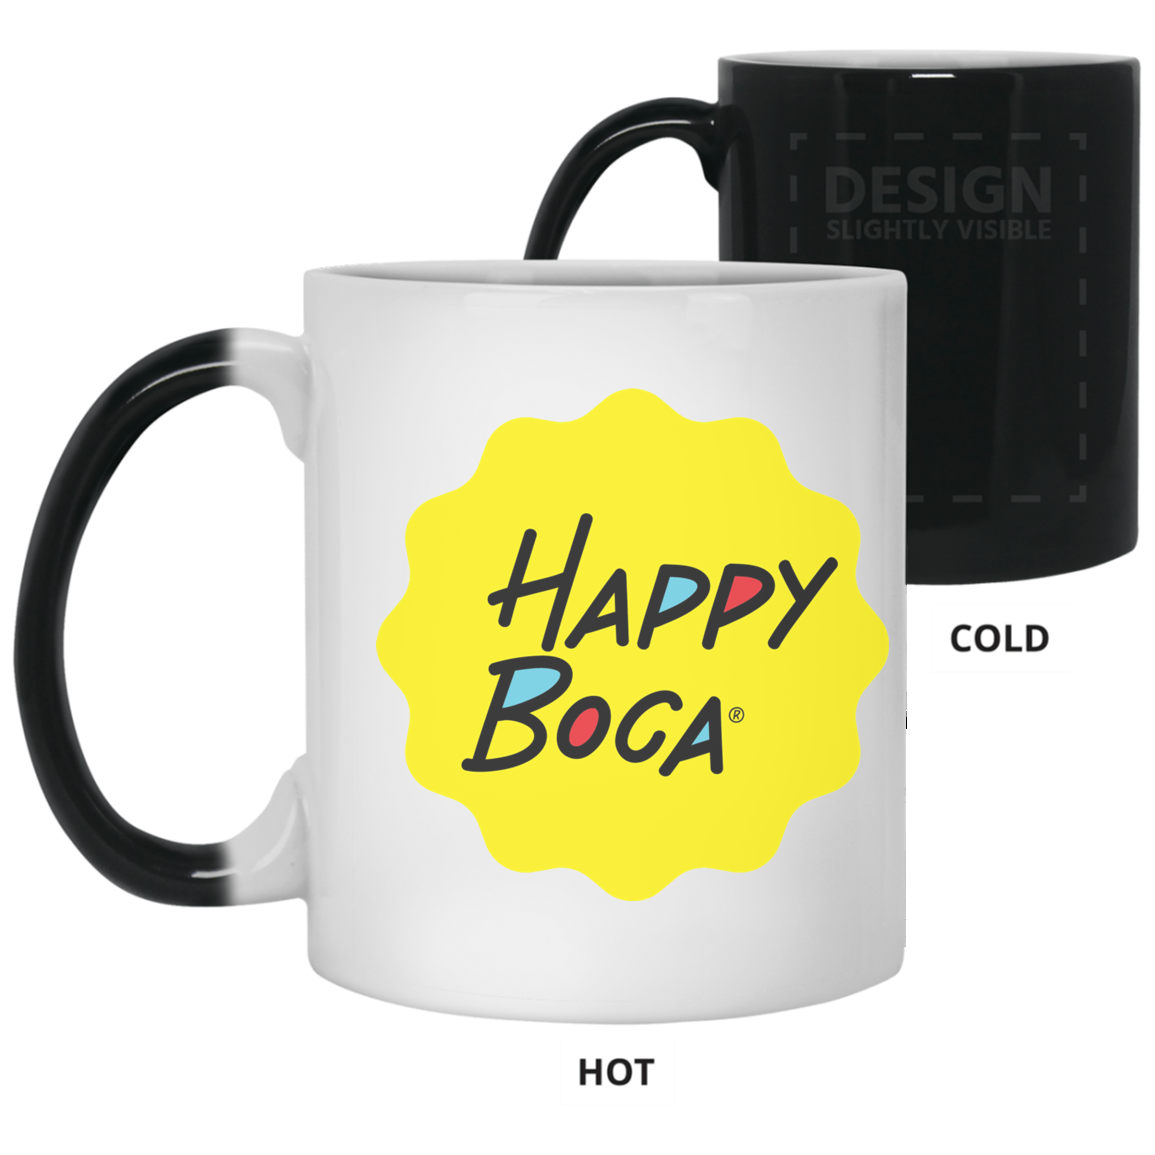 11 oz. Color Changing Mug - Happyboca